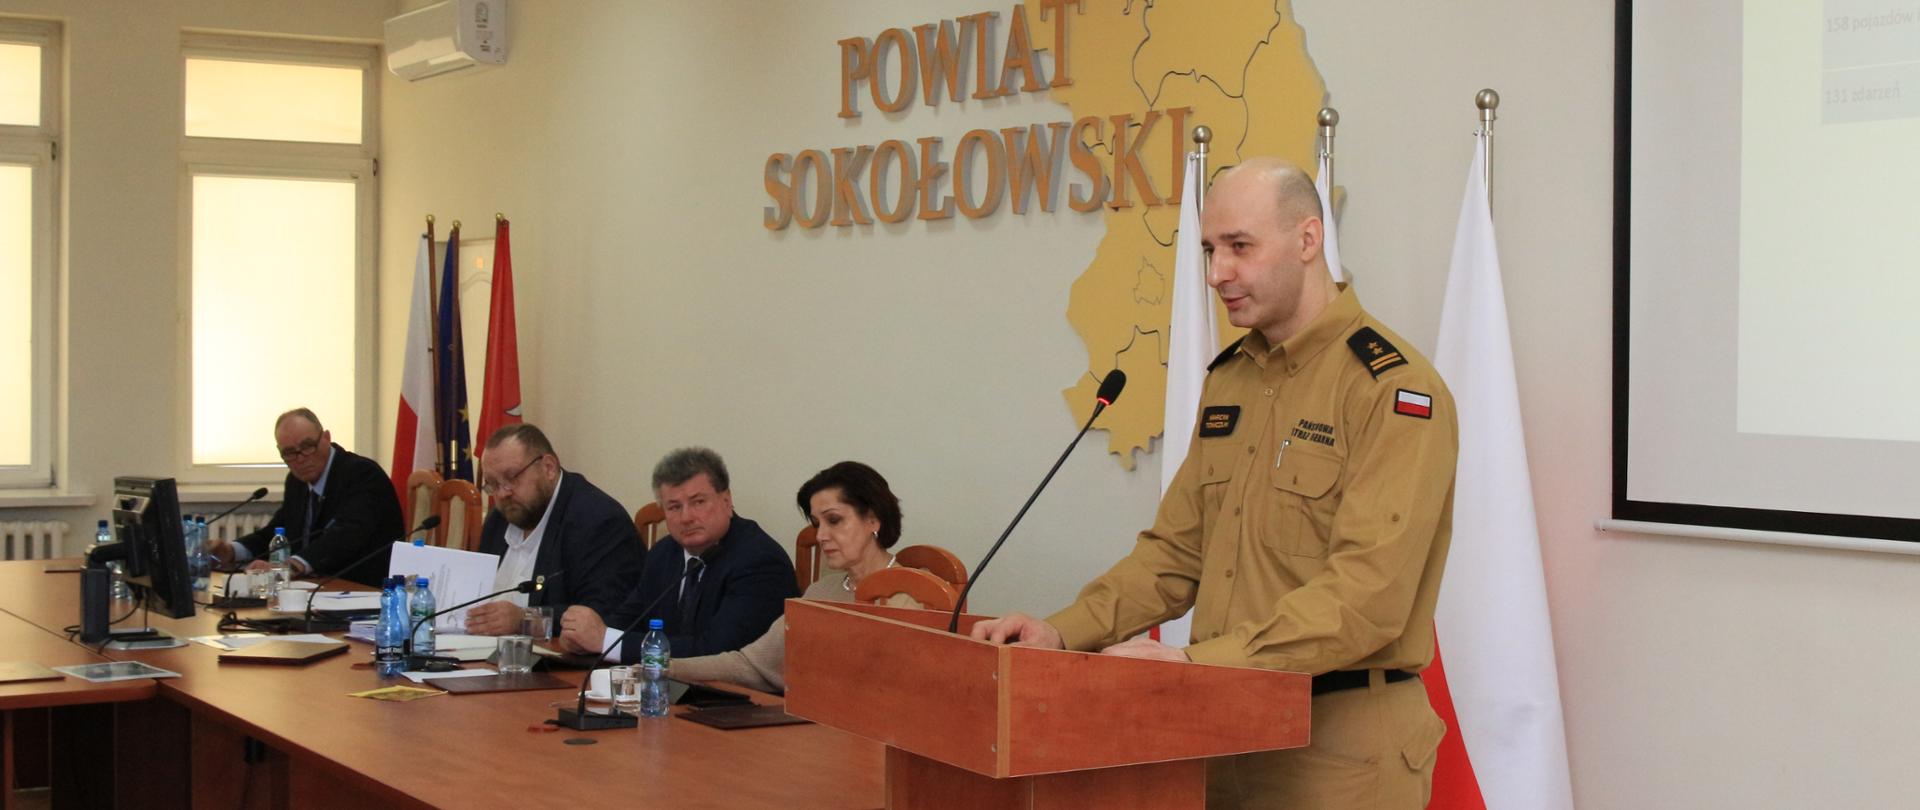 Złożenie informacji Komendanta Powiatowego PSP w Sokołowie Podlaskim dotyczącej bezpieczeństwa przeciwpożarowego powiatu sokołowskiego w 2023 roku - na zdjęciu komendant stoi za mównicą i przemawia w starostwie.